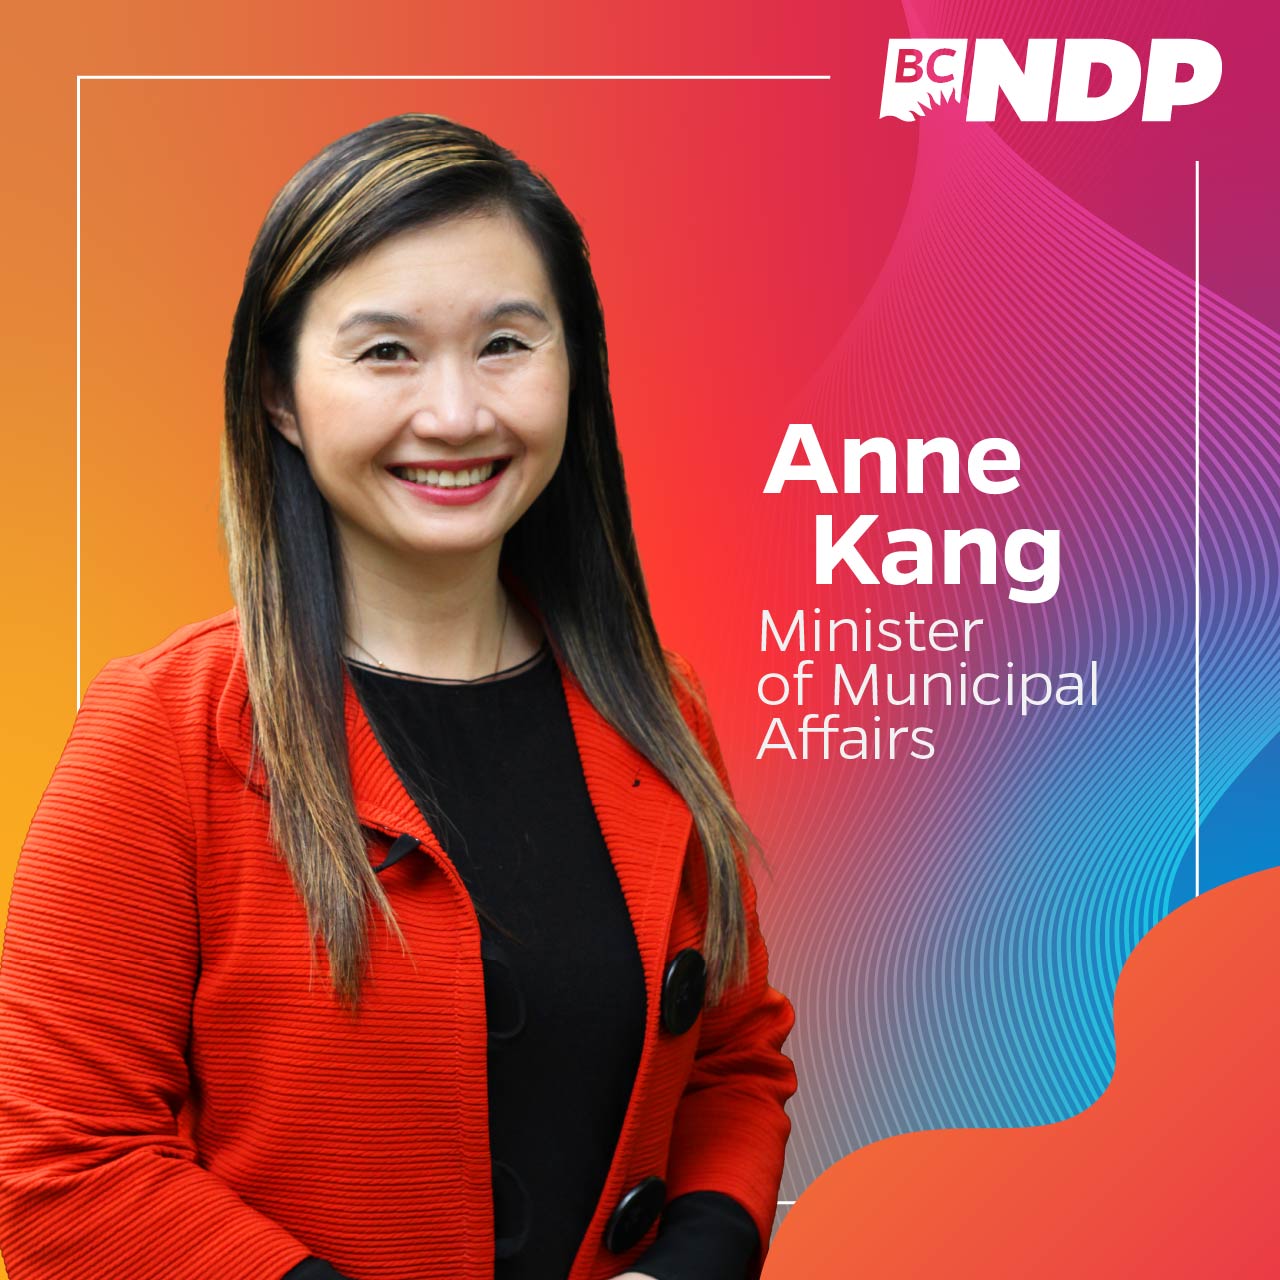 Anne Kang